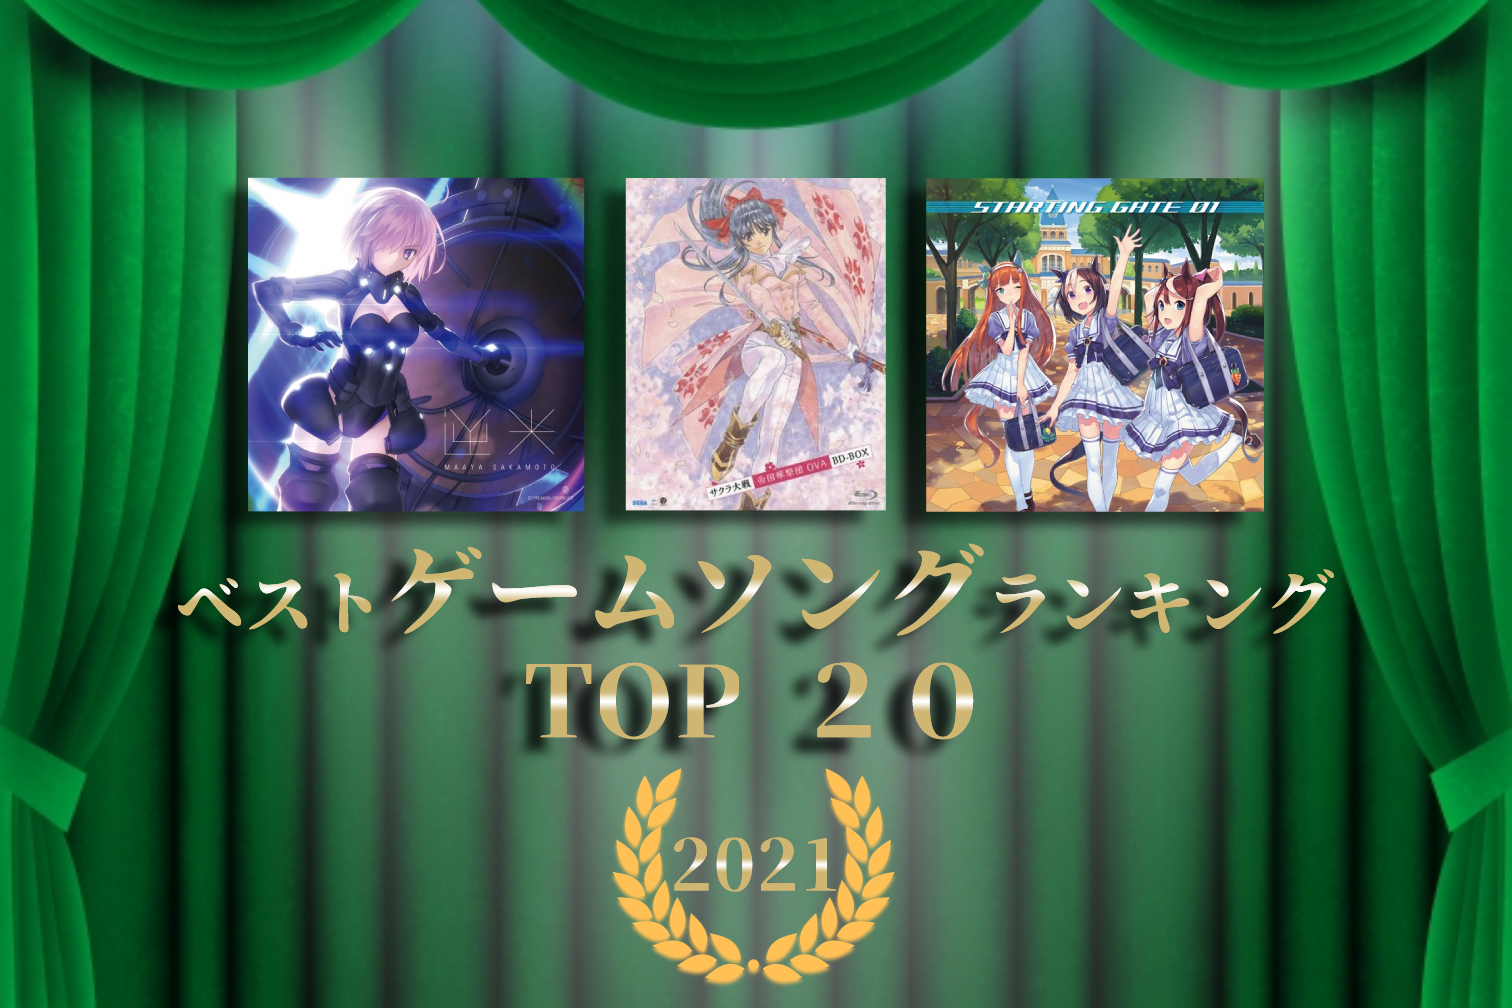 ゲームソング 楽曲 神曲ランキング21 Top アニメイトタイムズ